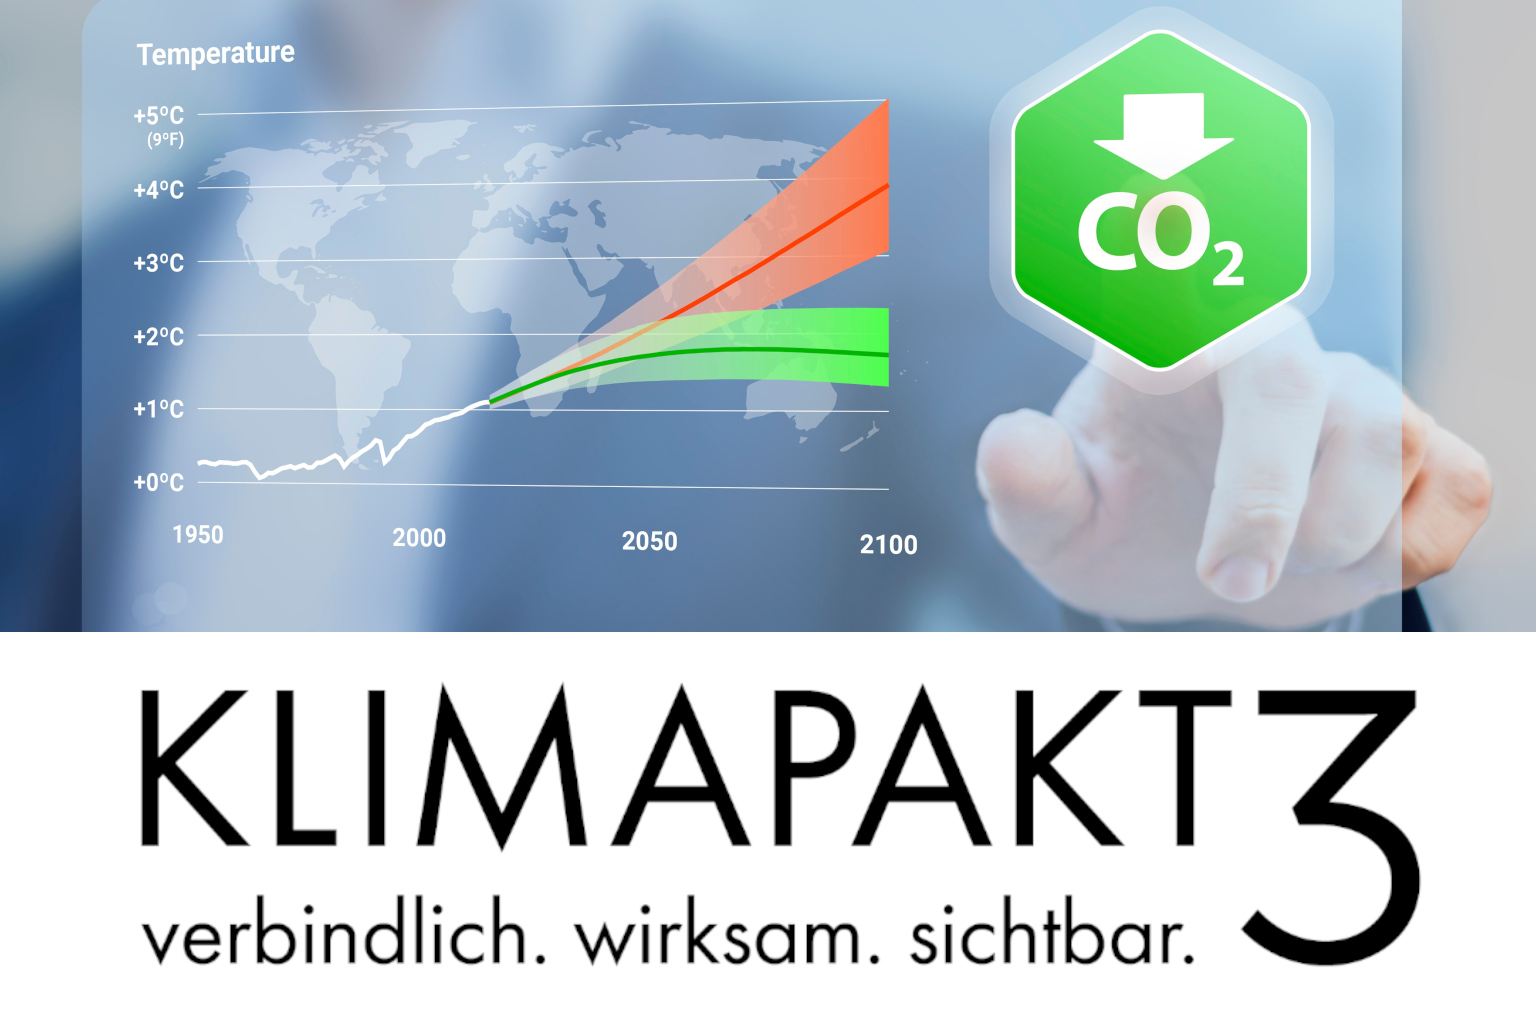 Klimapakt 3 - Logo mit Grafik einer Temperaturkurve nach Jahren